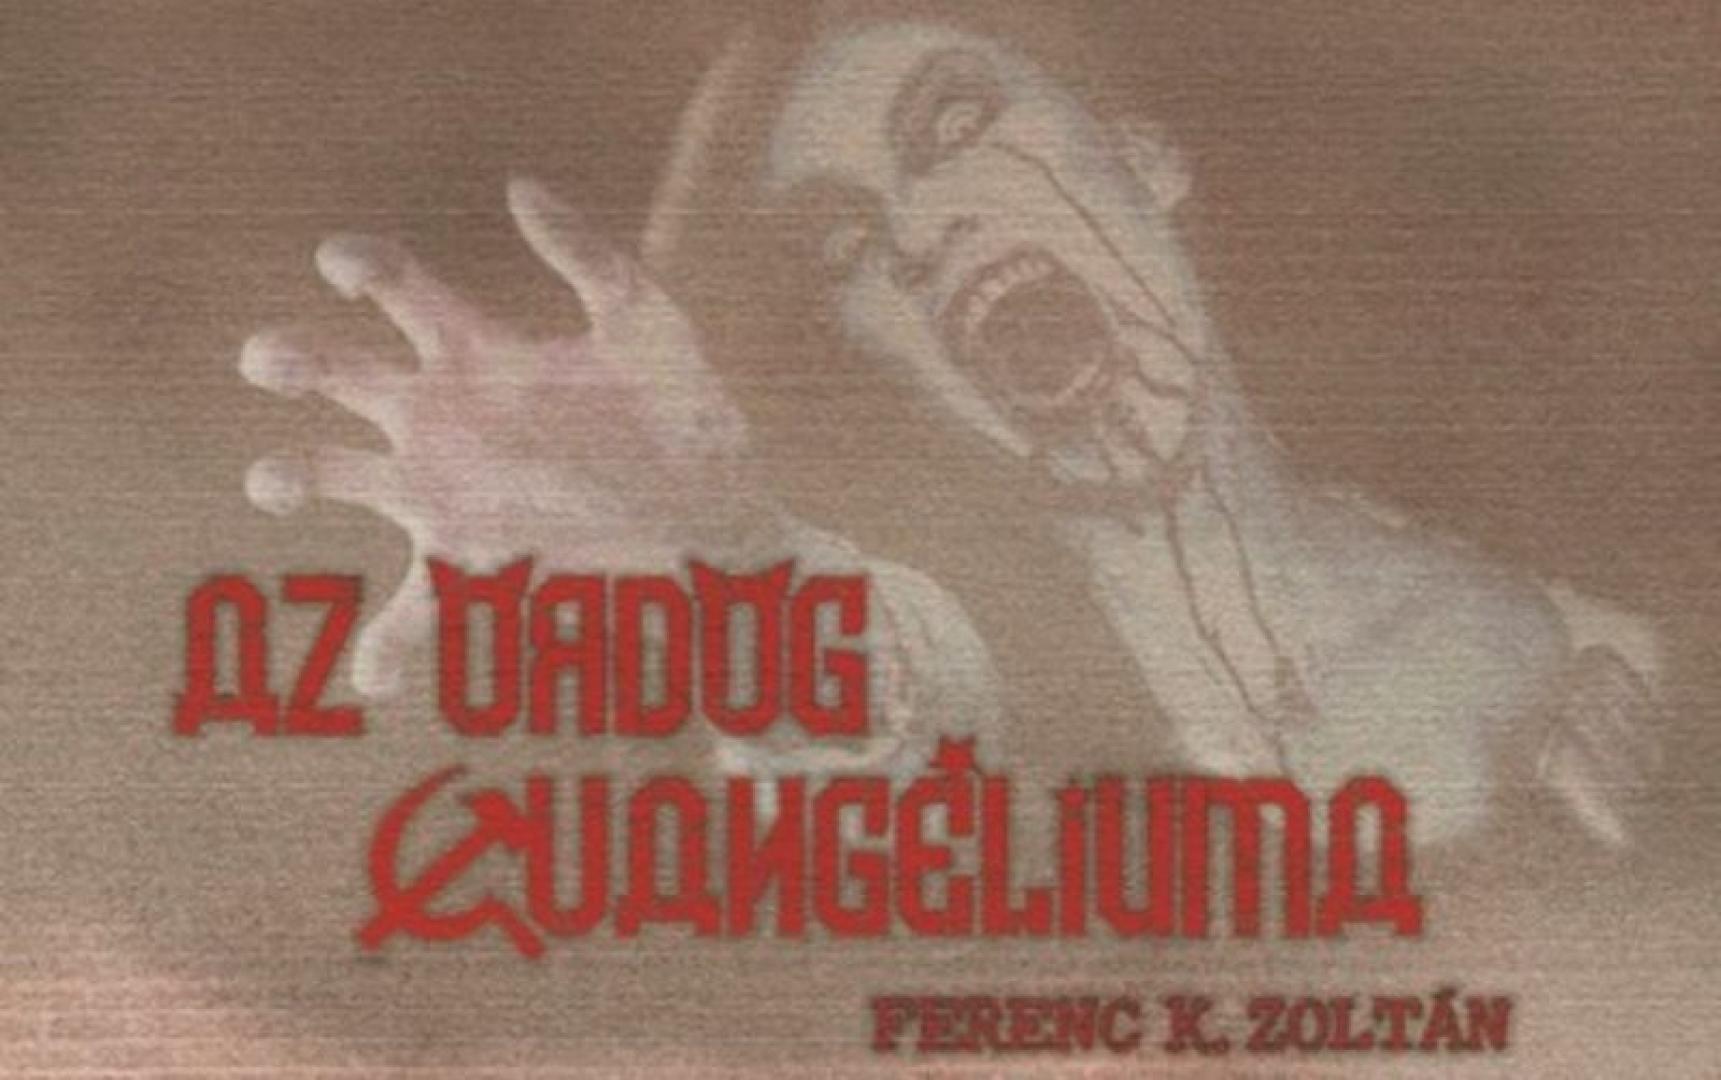 Ferenc K. Zoltán: Az ördög evangéliuma (2021)